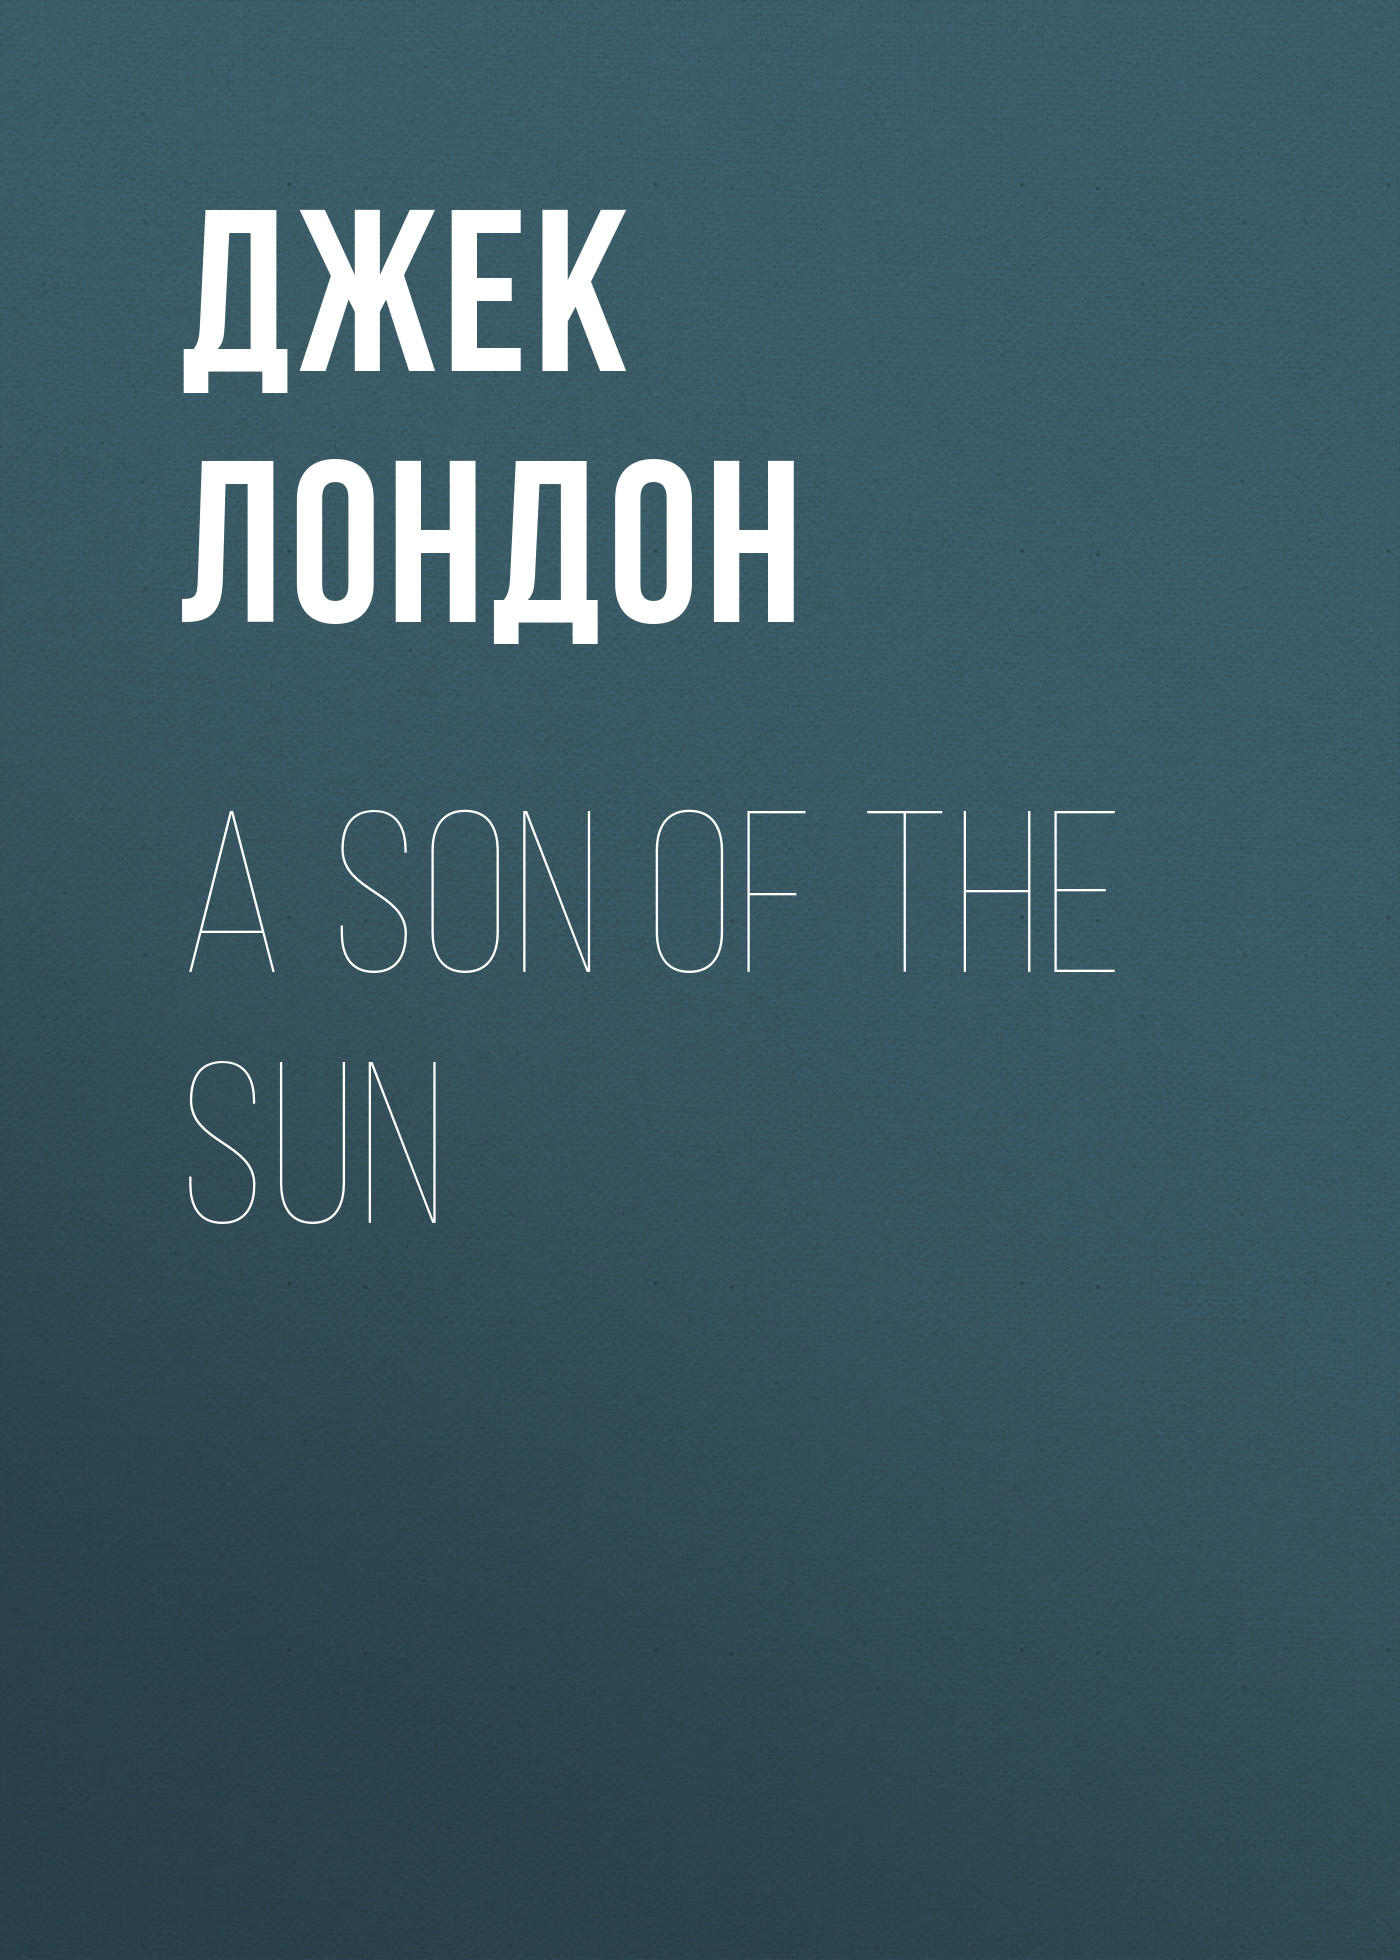 Книга A Son Of The Sun из серии , созданная Джек Лондон, может относится к жанру Зарубежная старинная литература, Зарубежная классика. Стоимость электронной книги A Son Of The Sun с идентификатором 25291726 составляет 0 руб.